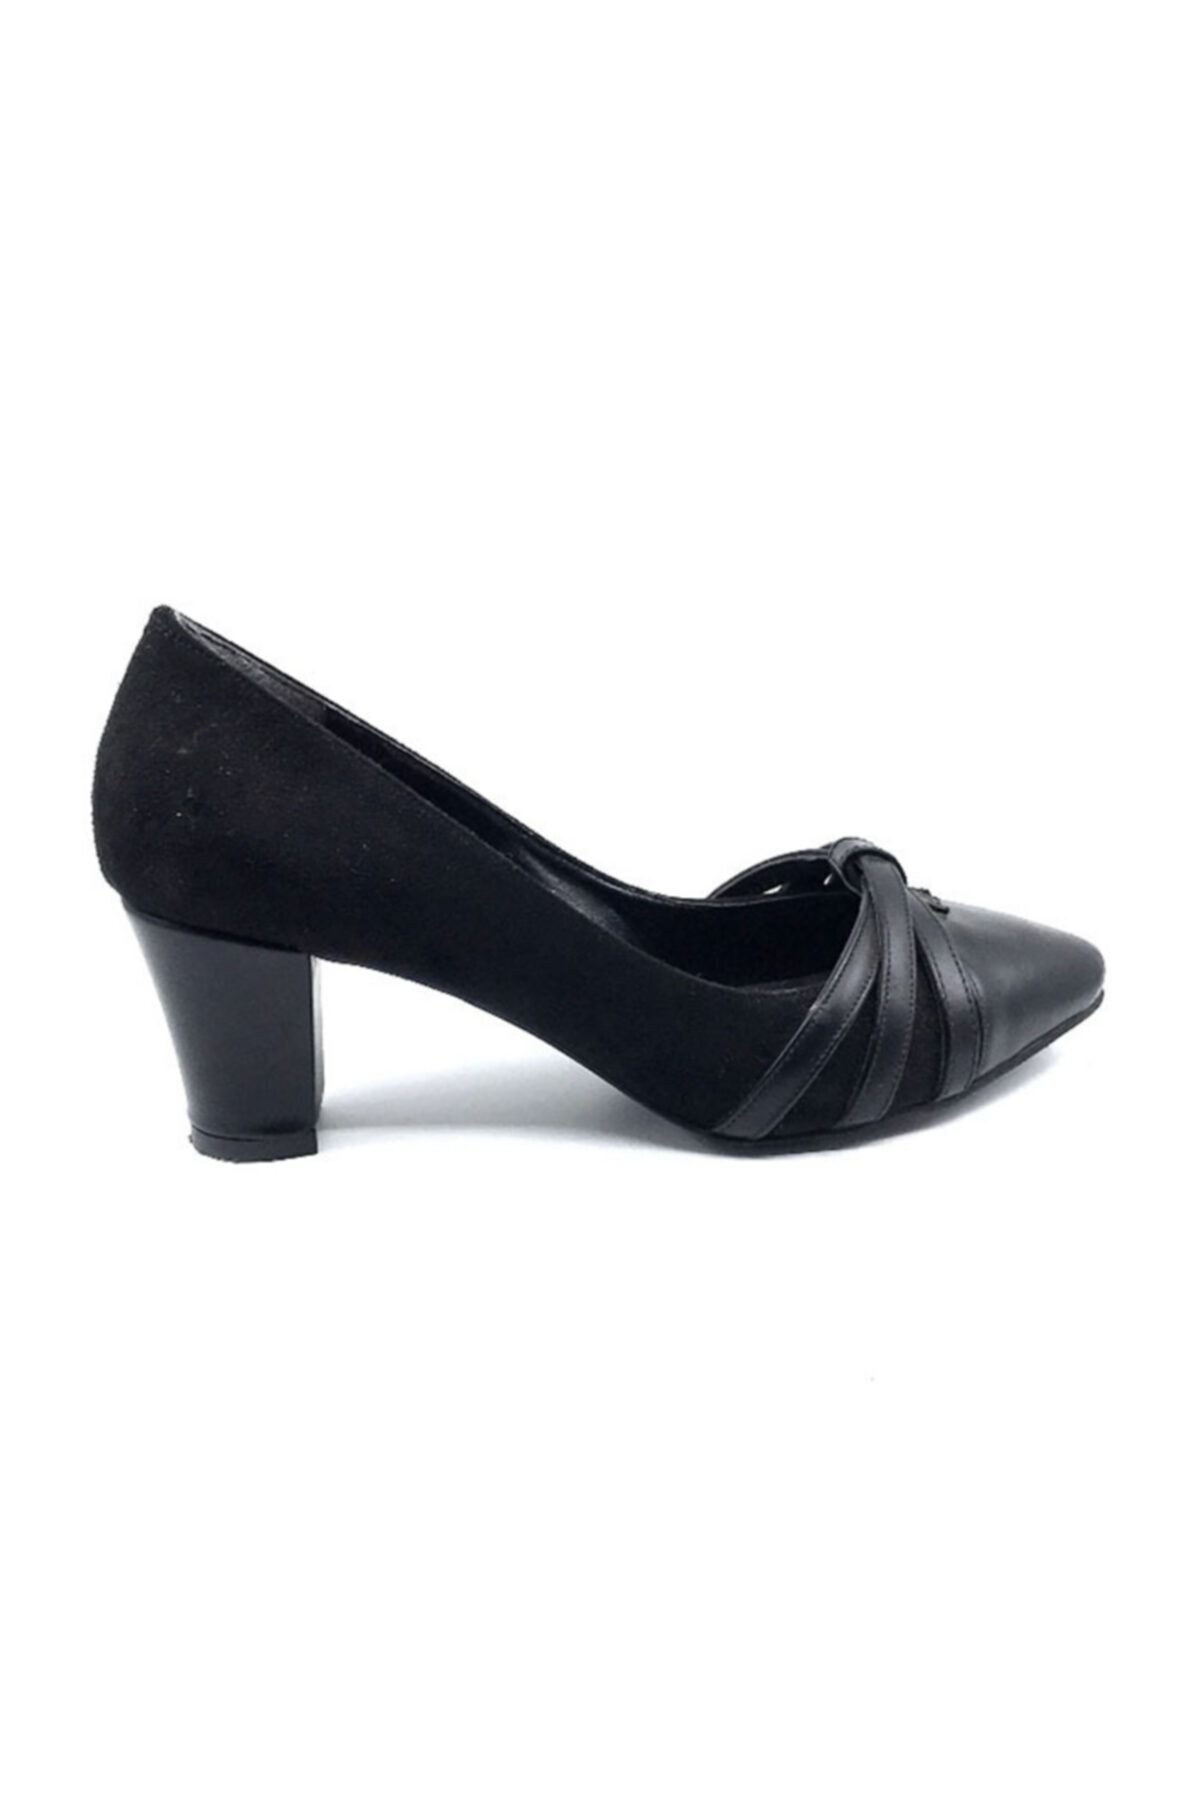 Daisy Kadın Siyah Süet Topuklu Ayakkabısı